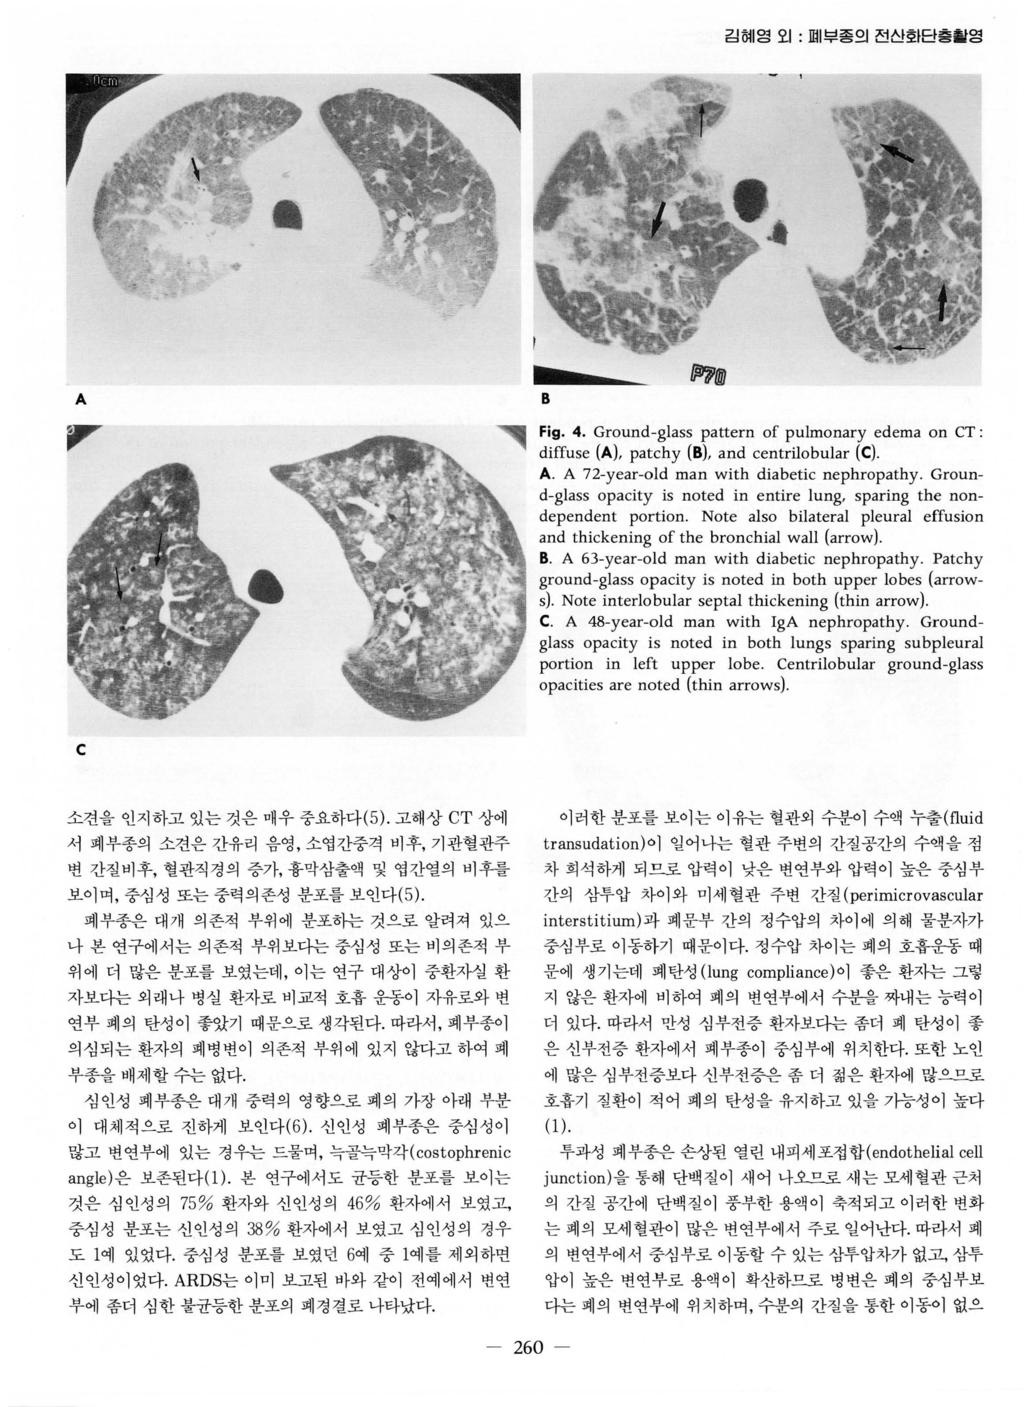 김혀 영오 1 : 며 부종의전신회단층활영 * A ", 댐횡 @ Fig. 4. Ground-glass pattern of pulmonary edema on CT: diffuse (A), patchy (B), and centrilobular (C). A. A 72-year-old man with diabetic nephropathy.